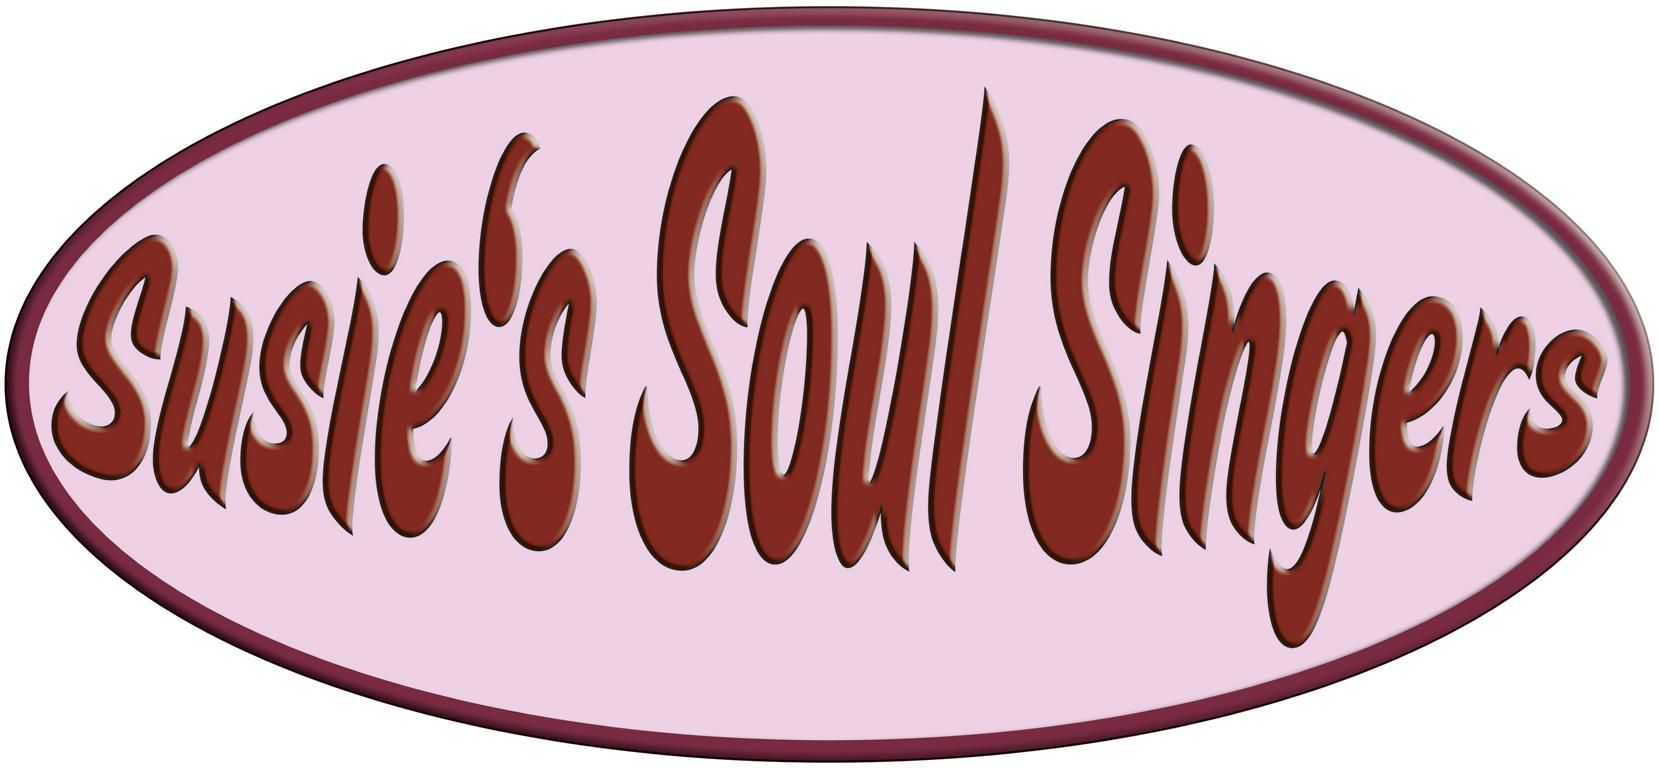 Susie's Soul Singer wieder beim Frühlingszauber in Westend am Wochenende des 13. und 14. Mai 2023 dabei. Zu sehen ist das Logo des 5-köpfigen Mädchenchors.